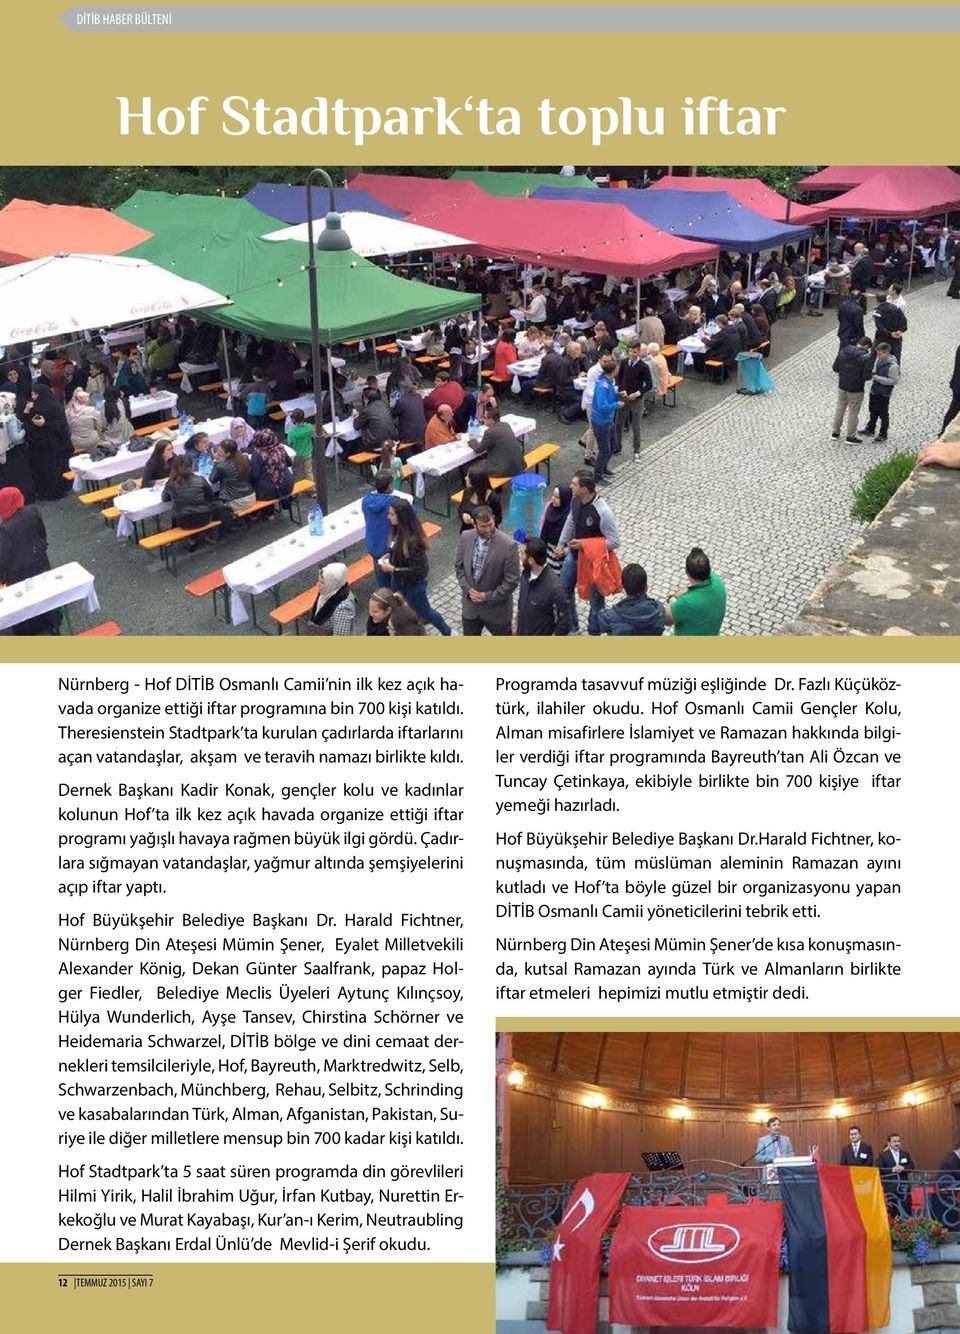 Dernek Başkanı Kadir Konak, gençler kolu ve kadınlar kolunun Hof ta ilk kez açık havada organize ettiği iftar programı yağışlı havaya rağmen büyük ilgi gördü.